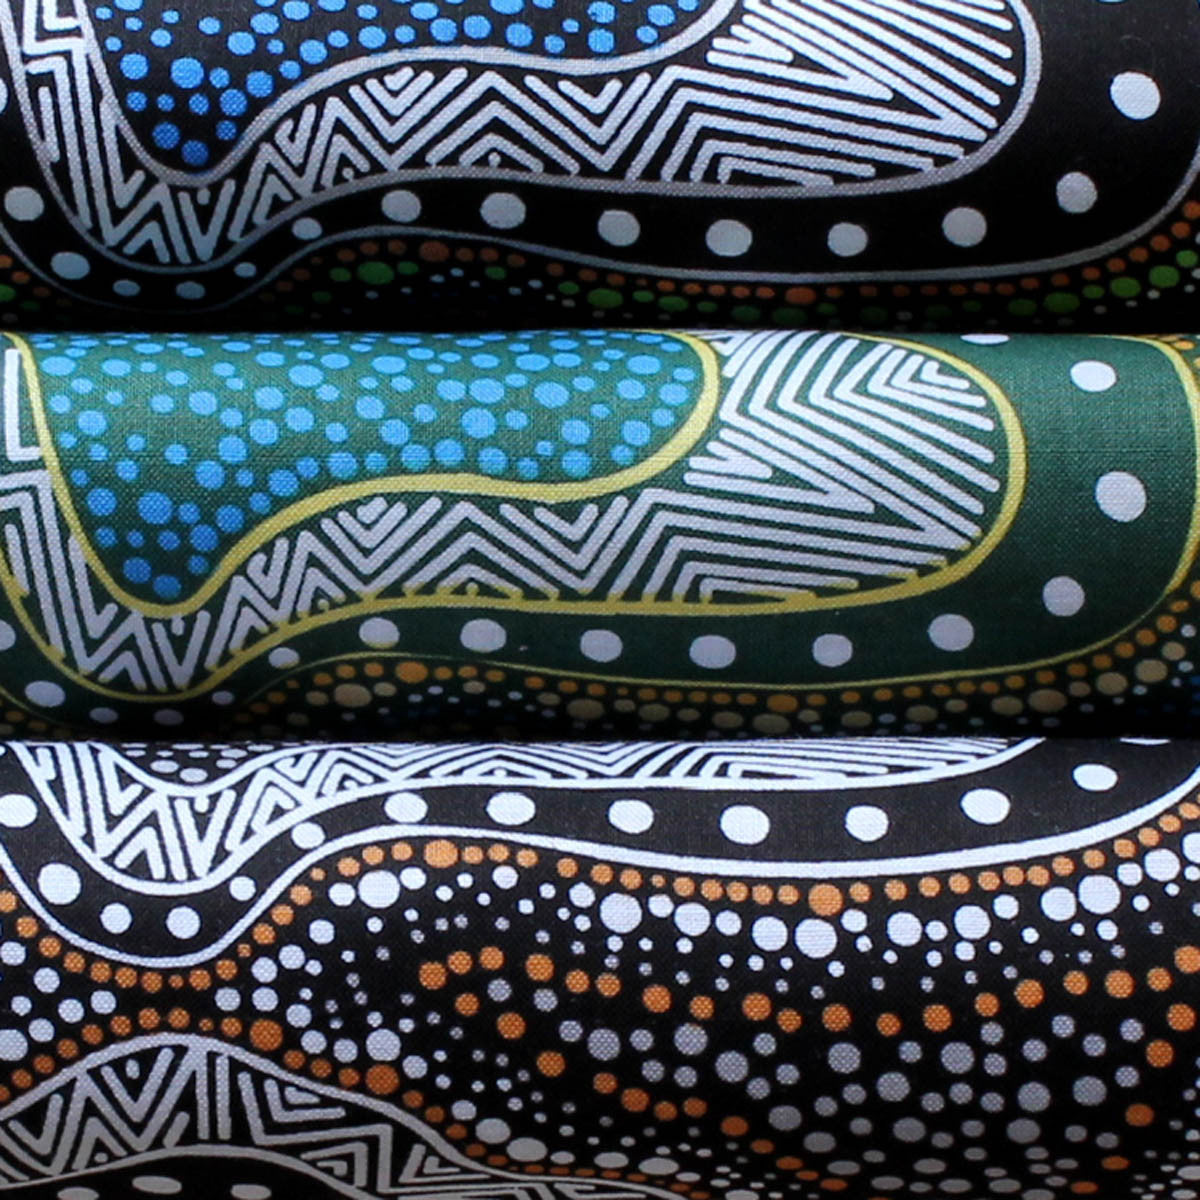 POSSUM LAND & WATER DREAMING BLUE by Aboriginal Artist HEATHER KENNEDY